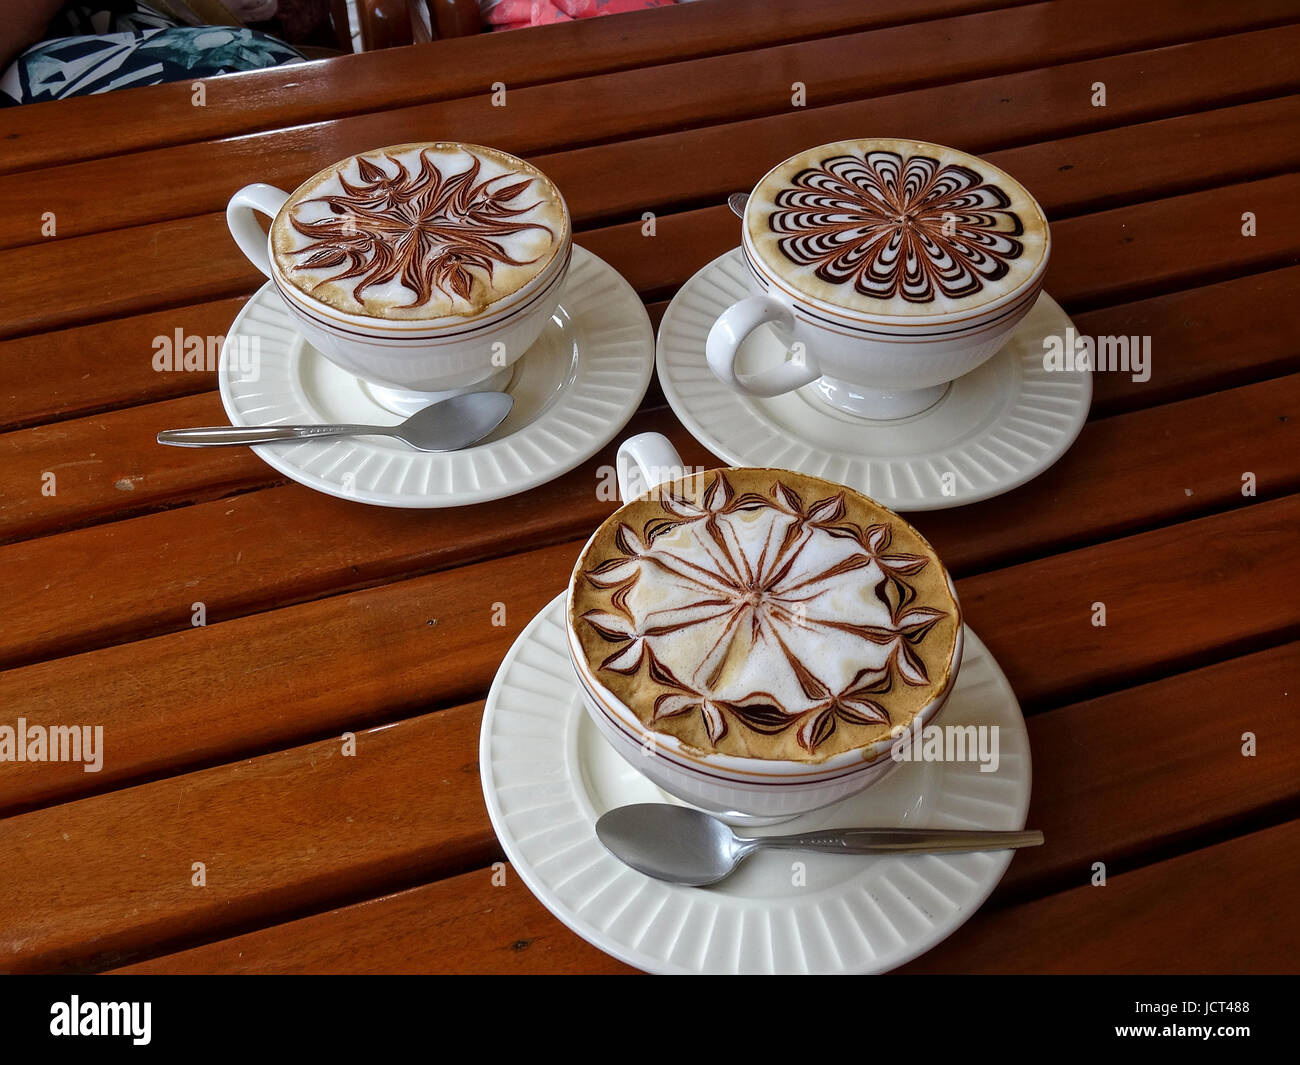 Caffè decorato immagini e fotografie stock ad alta risoluzione - Alamy